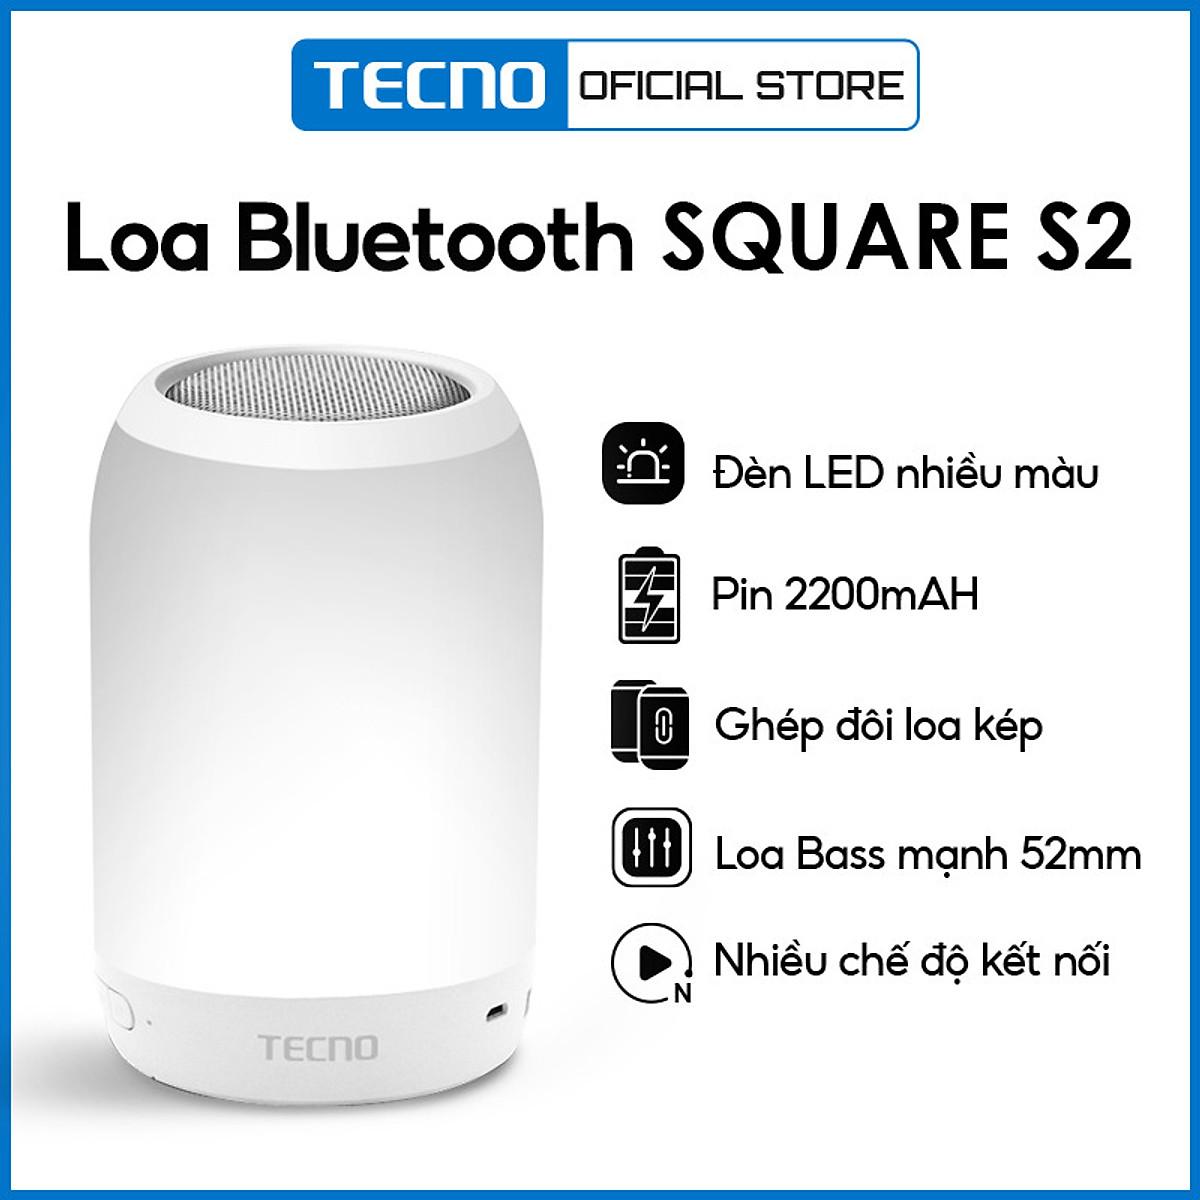 Loa Bluetooth TECNO SQUARE 2 | Loa Bass mạnh 52mm | Ghép đôi loa kép | Pin 2220 mAh | Đèn Led nhiều màu